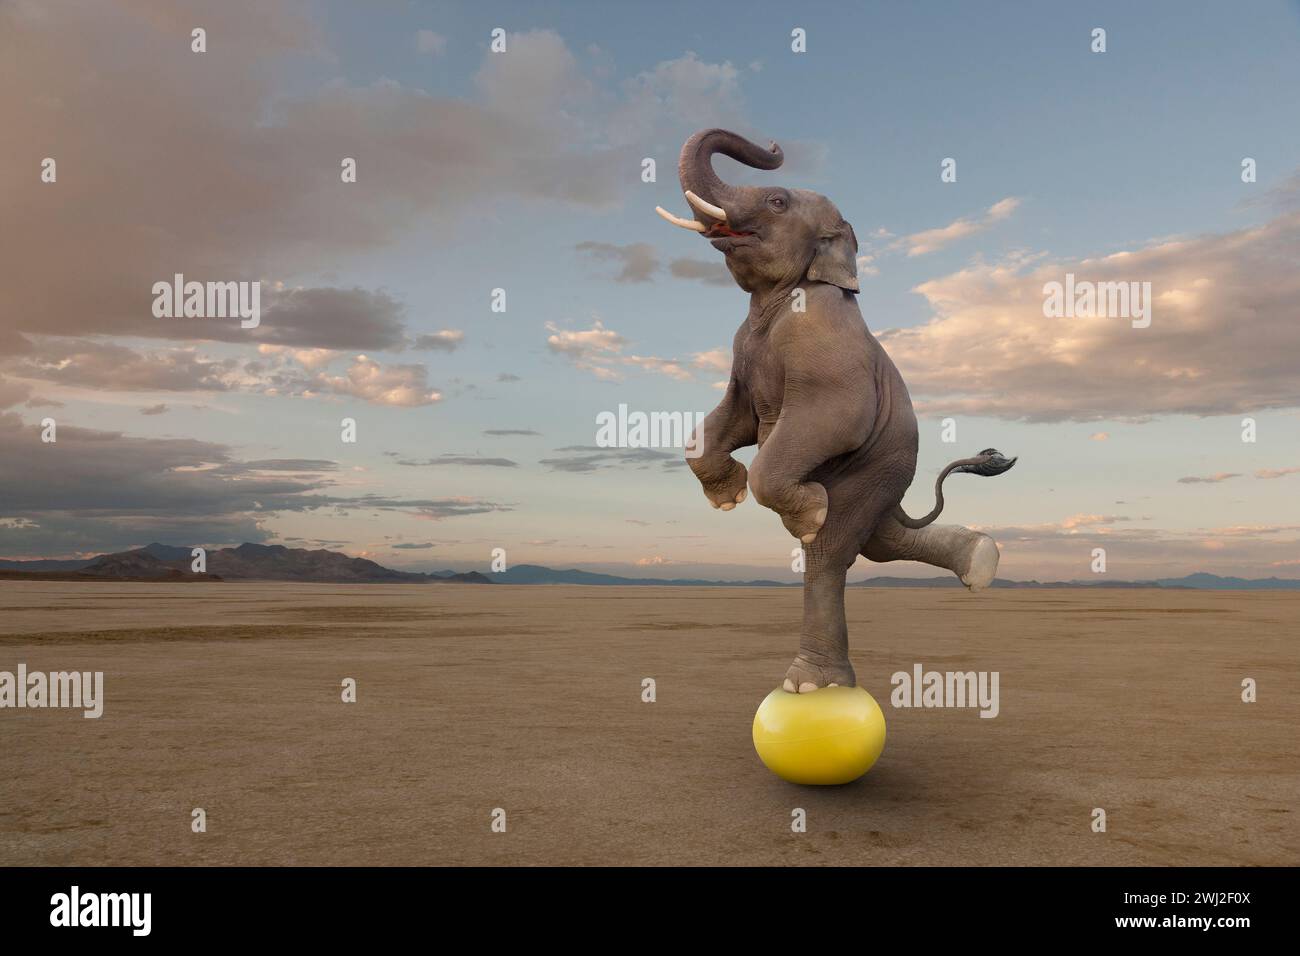 Un éléphant se balance sur une boule jaune dans une image sur la taille, la compétence, l'agilité et l'inattendu. Banque D'Images